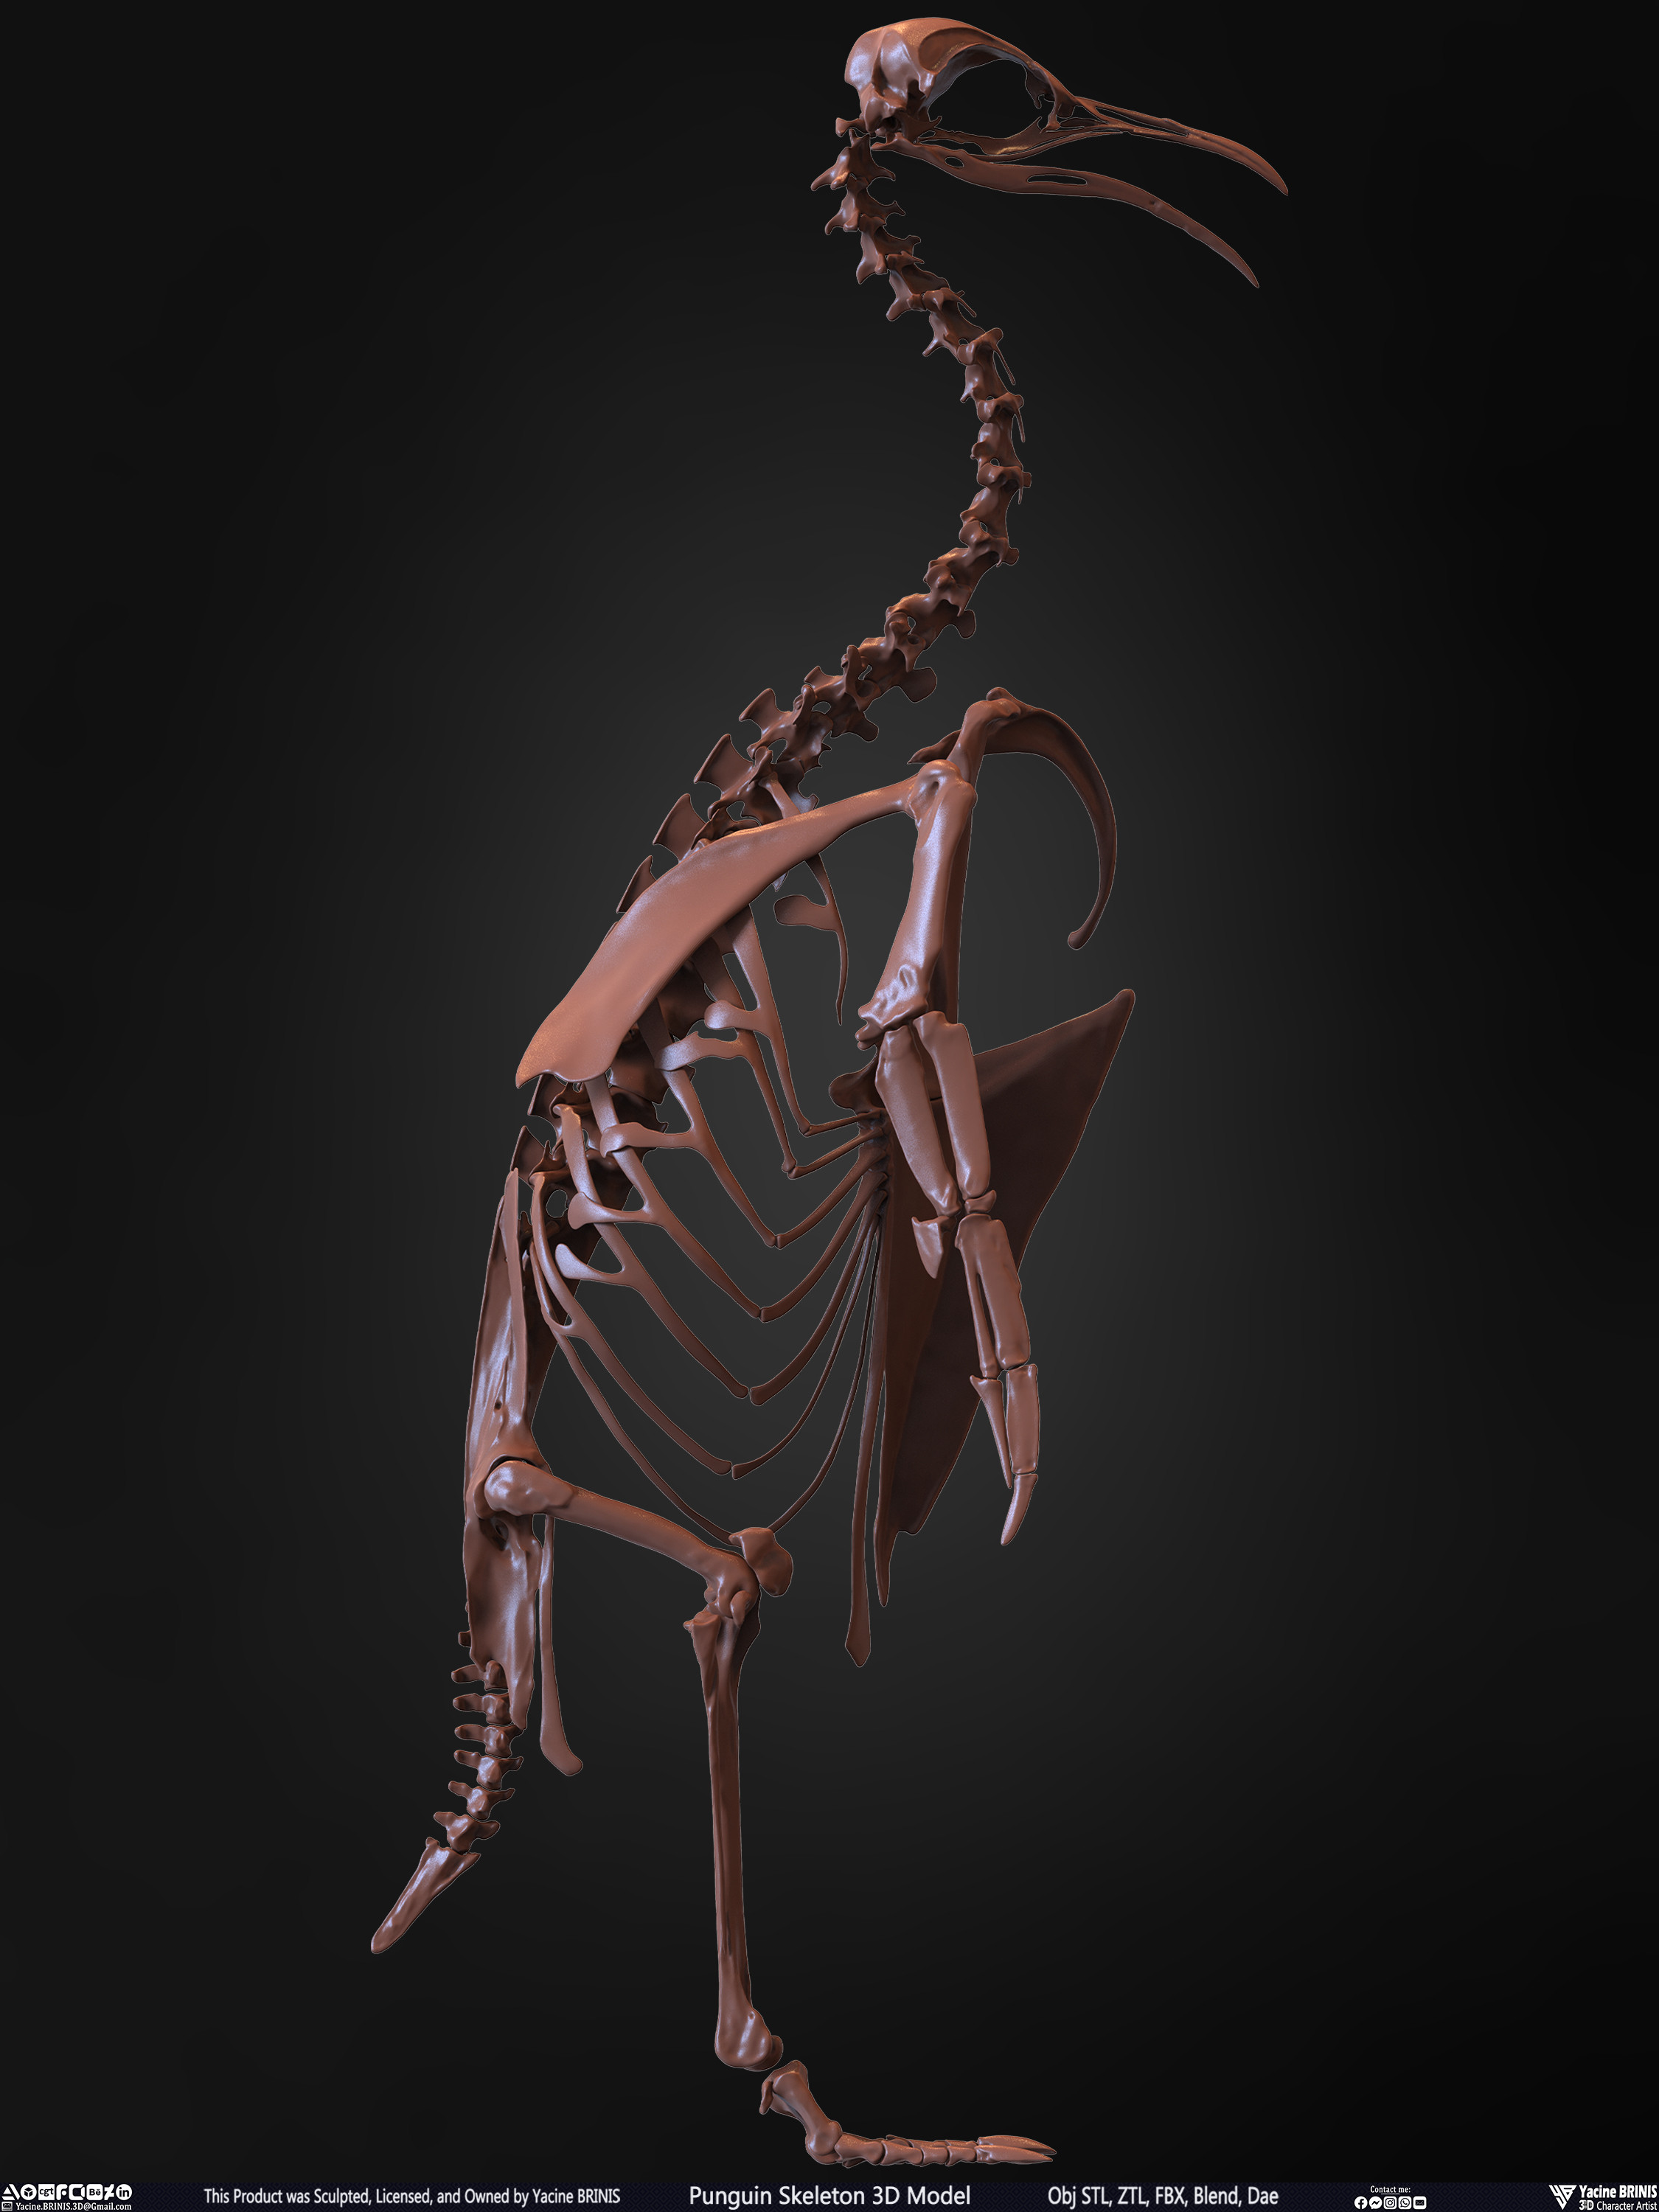 Penguin Skeleton 3D Model Sculpted by Yacine BRINIS Set 014